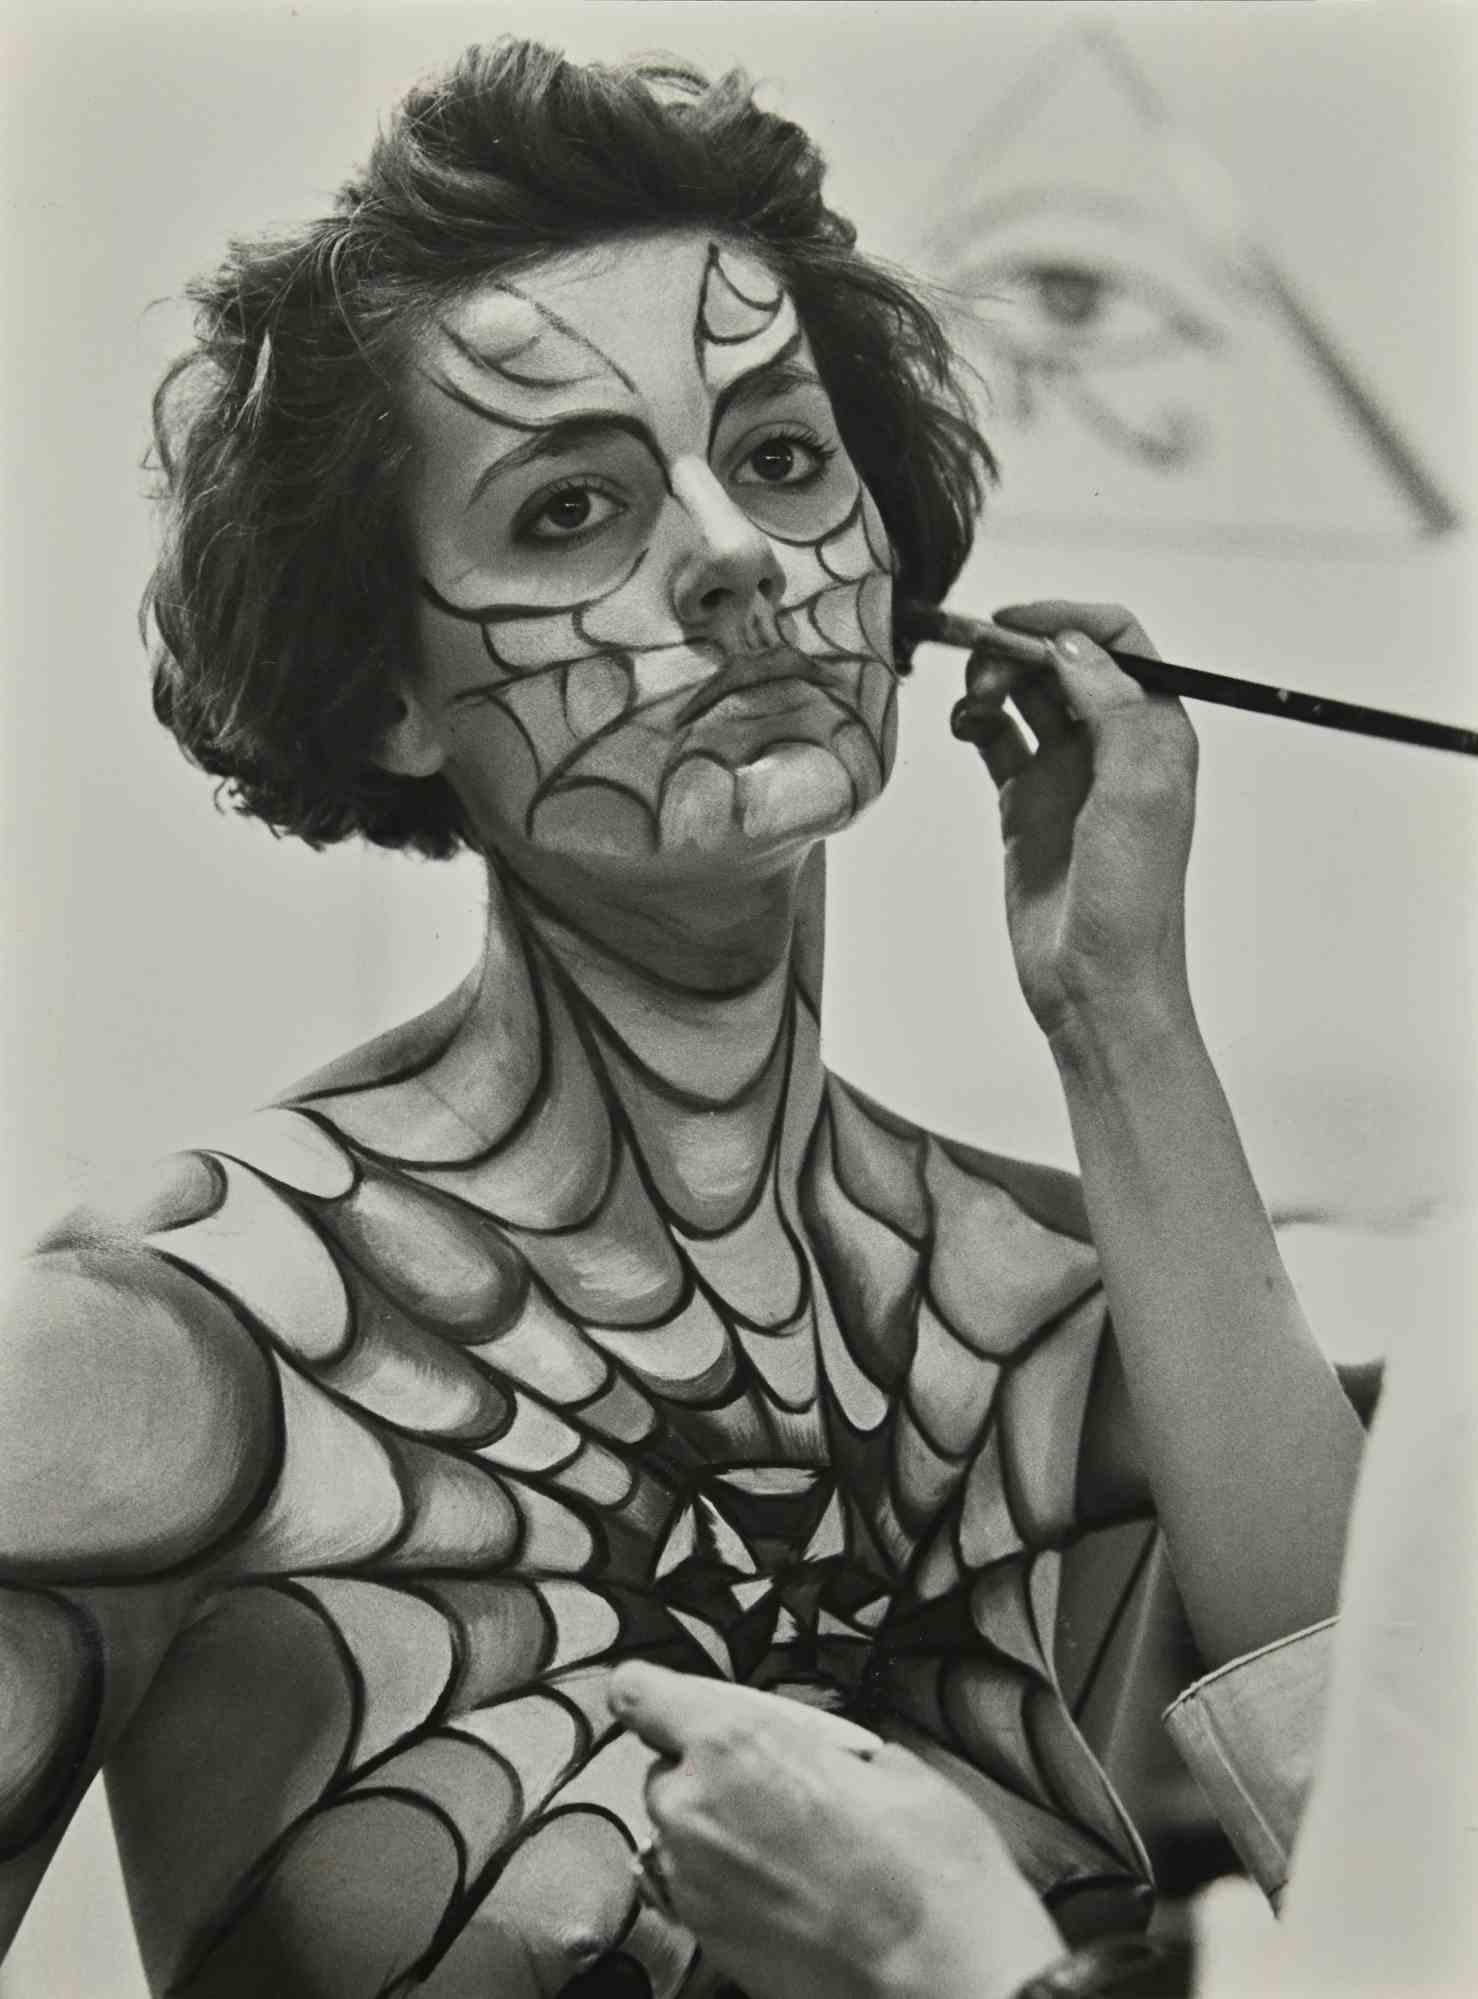 Unknown Portrait Photograph - Spider Woman - Vintage b/w Photo - 1980s